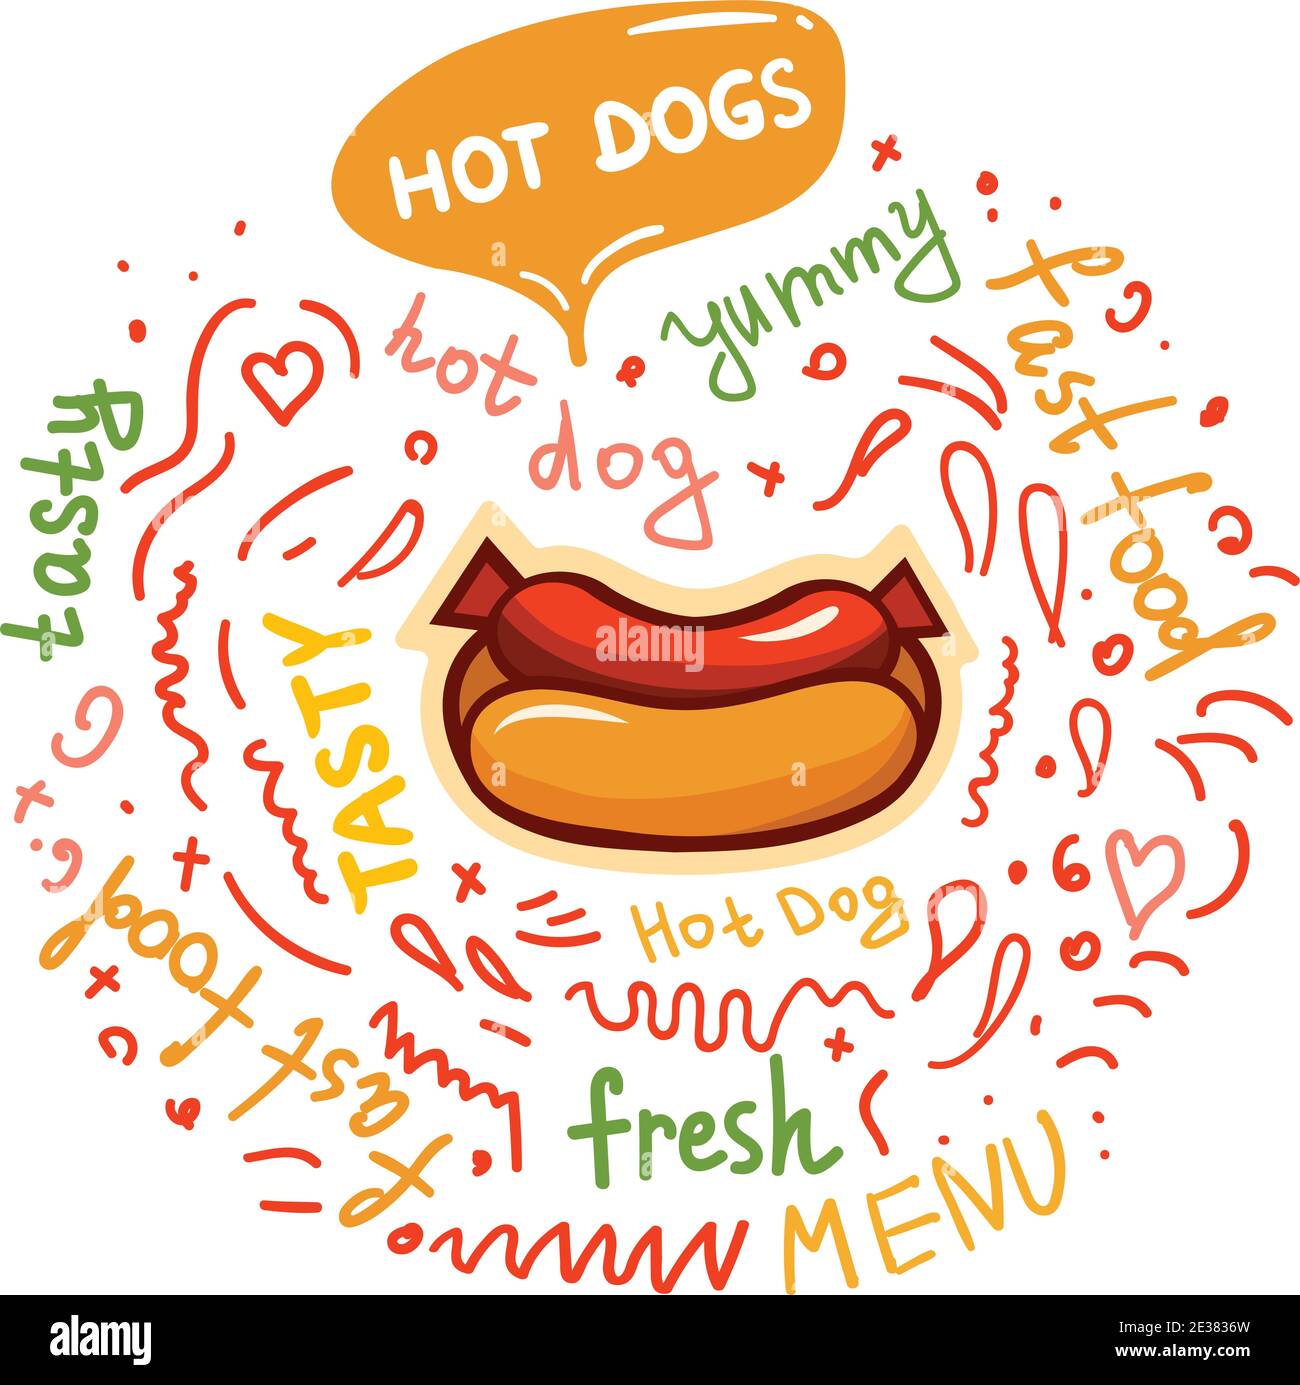 Farbenfrohe Vektorgrafik mit Hotdog, Kritzeleien und Schriftzug. Stock Vektor